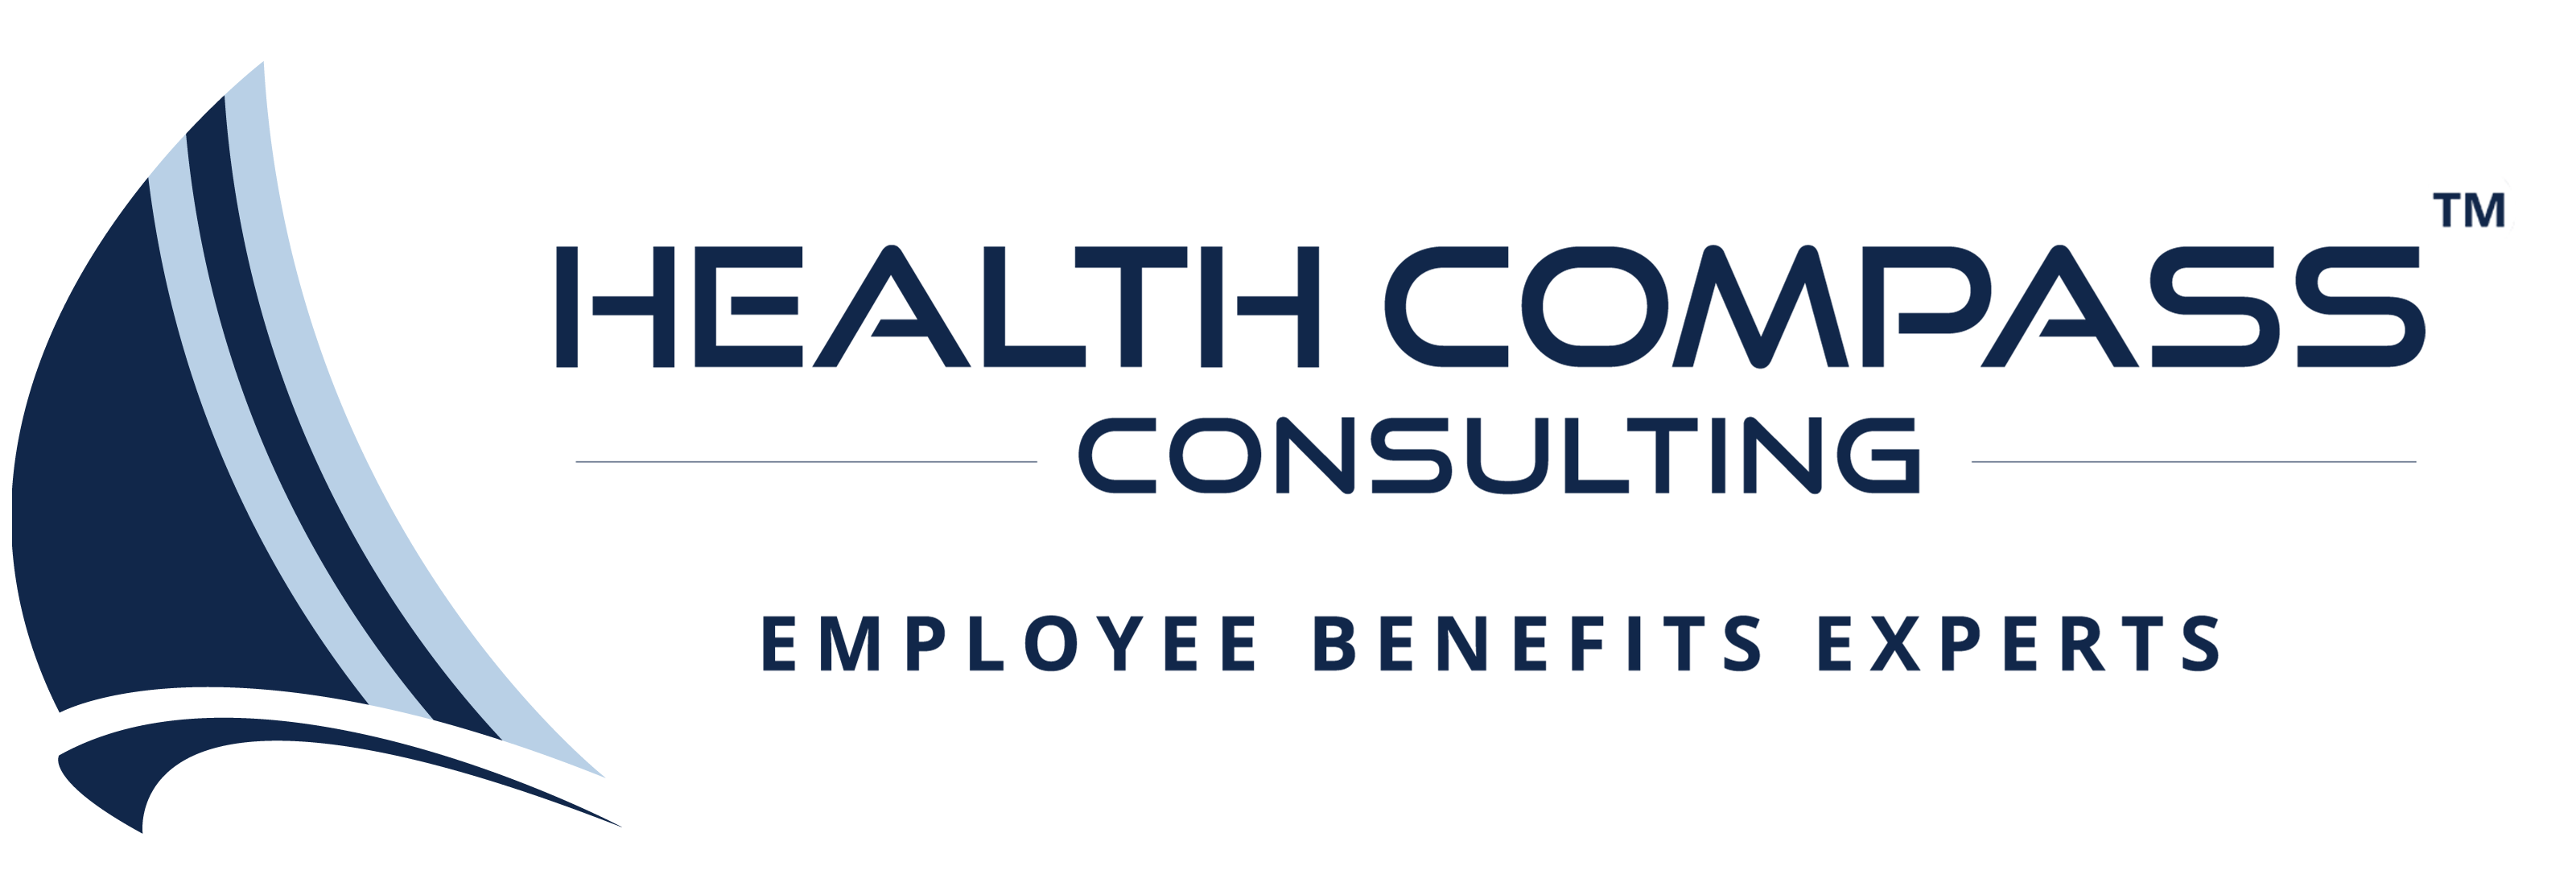 Health Compas logo2 52